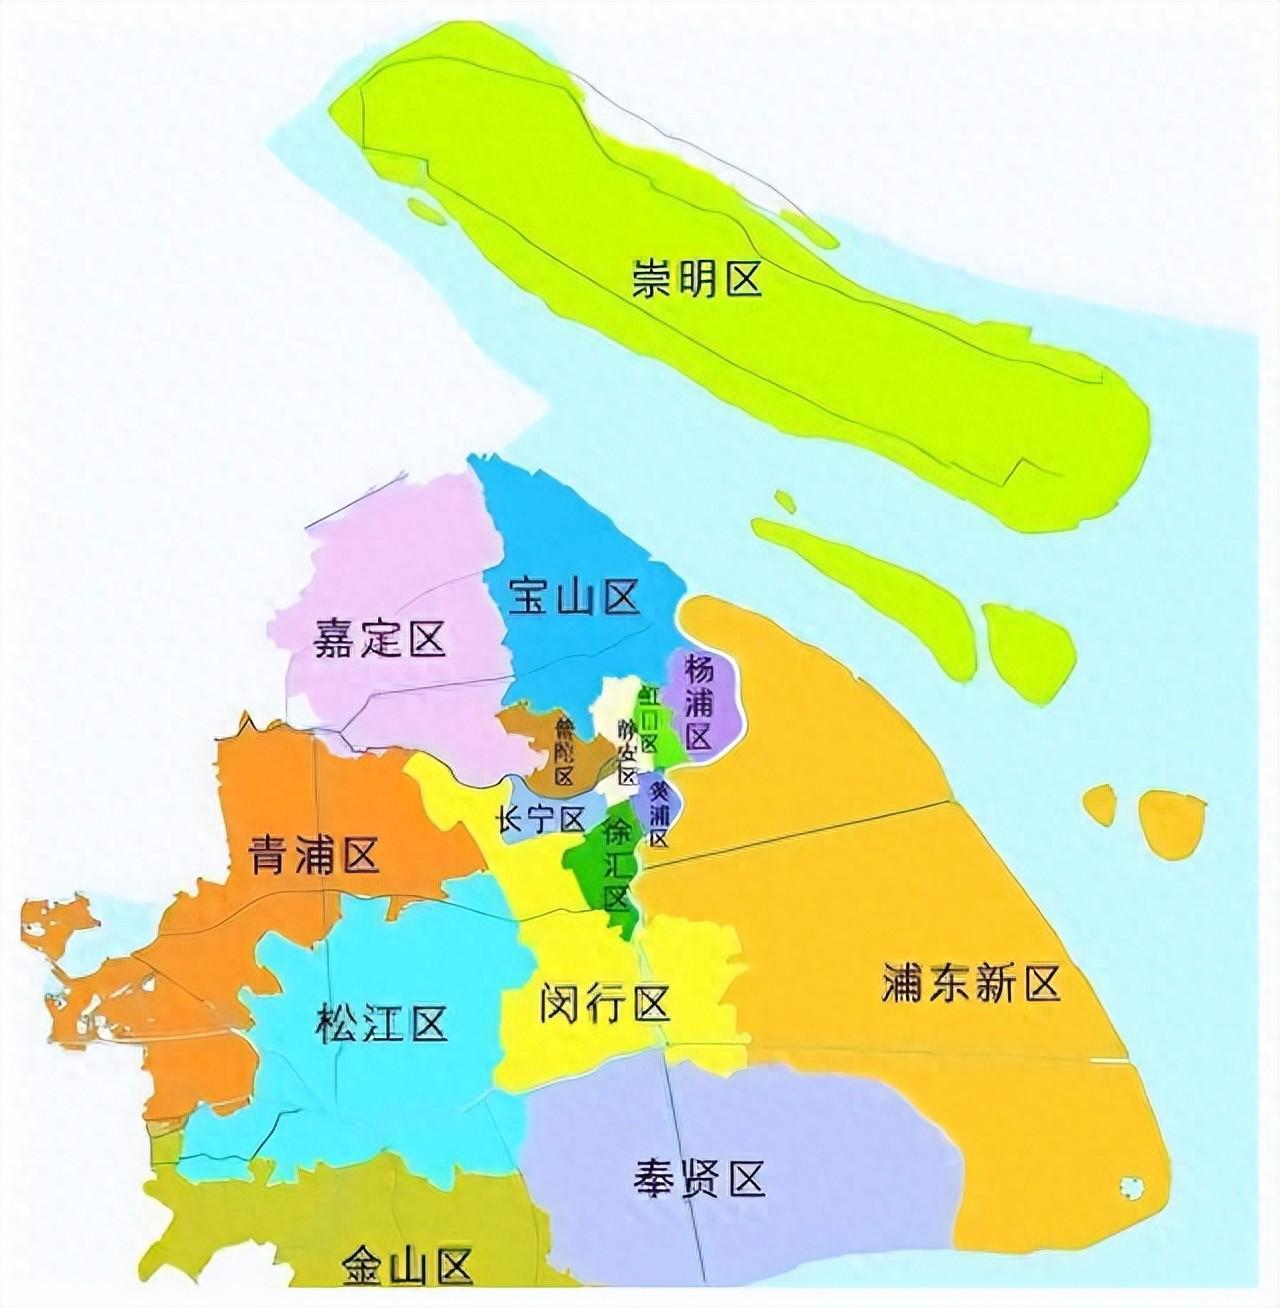 上海区划调整设想：宝山嘉定合并，青浦升副省级新区，昆山划入